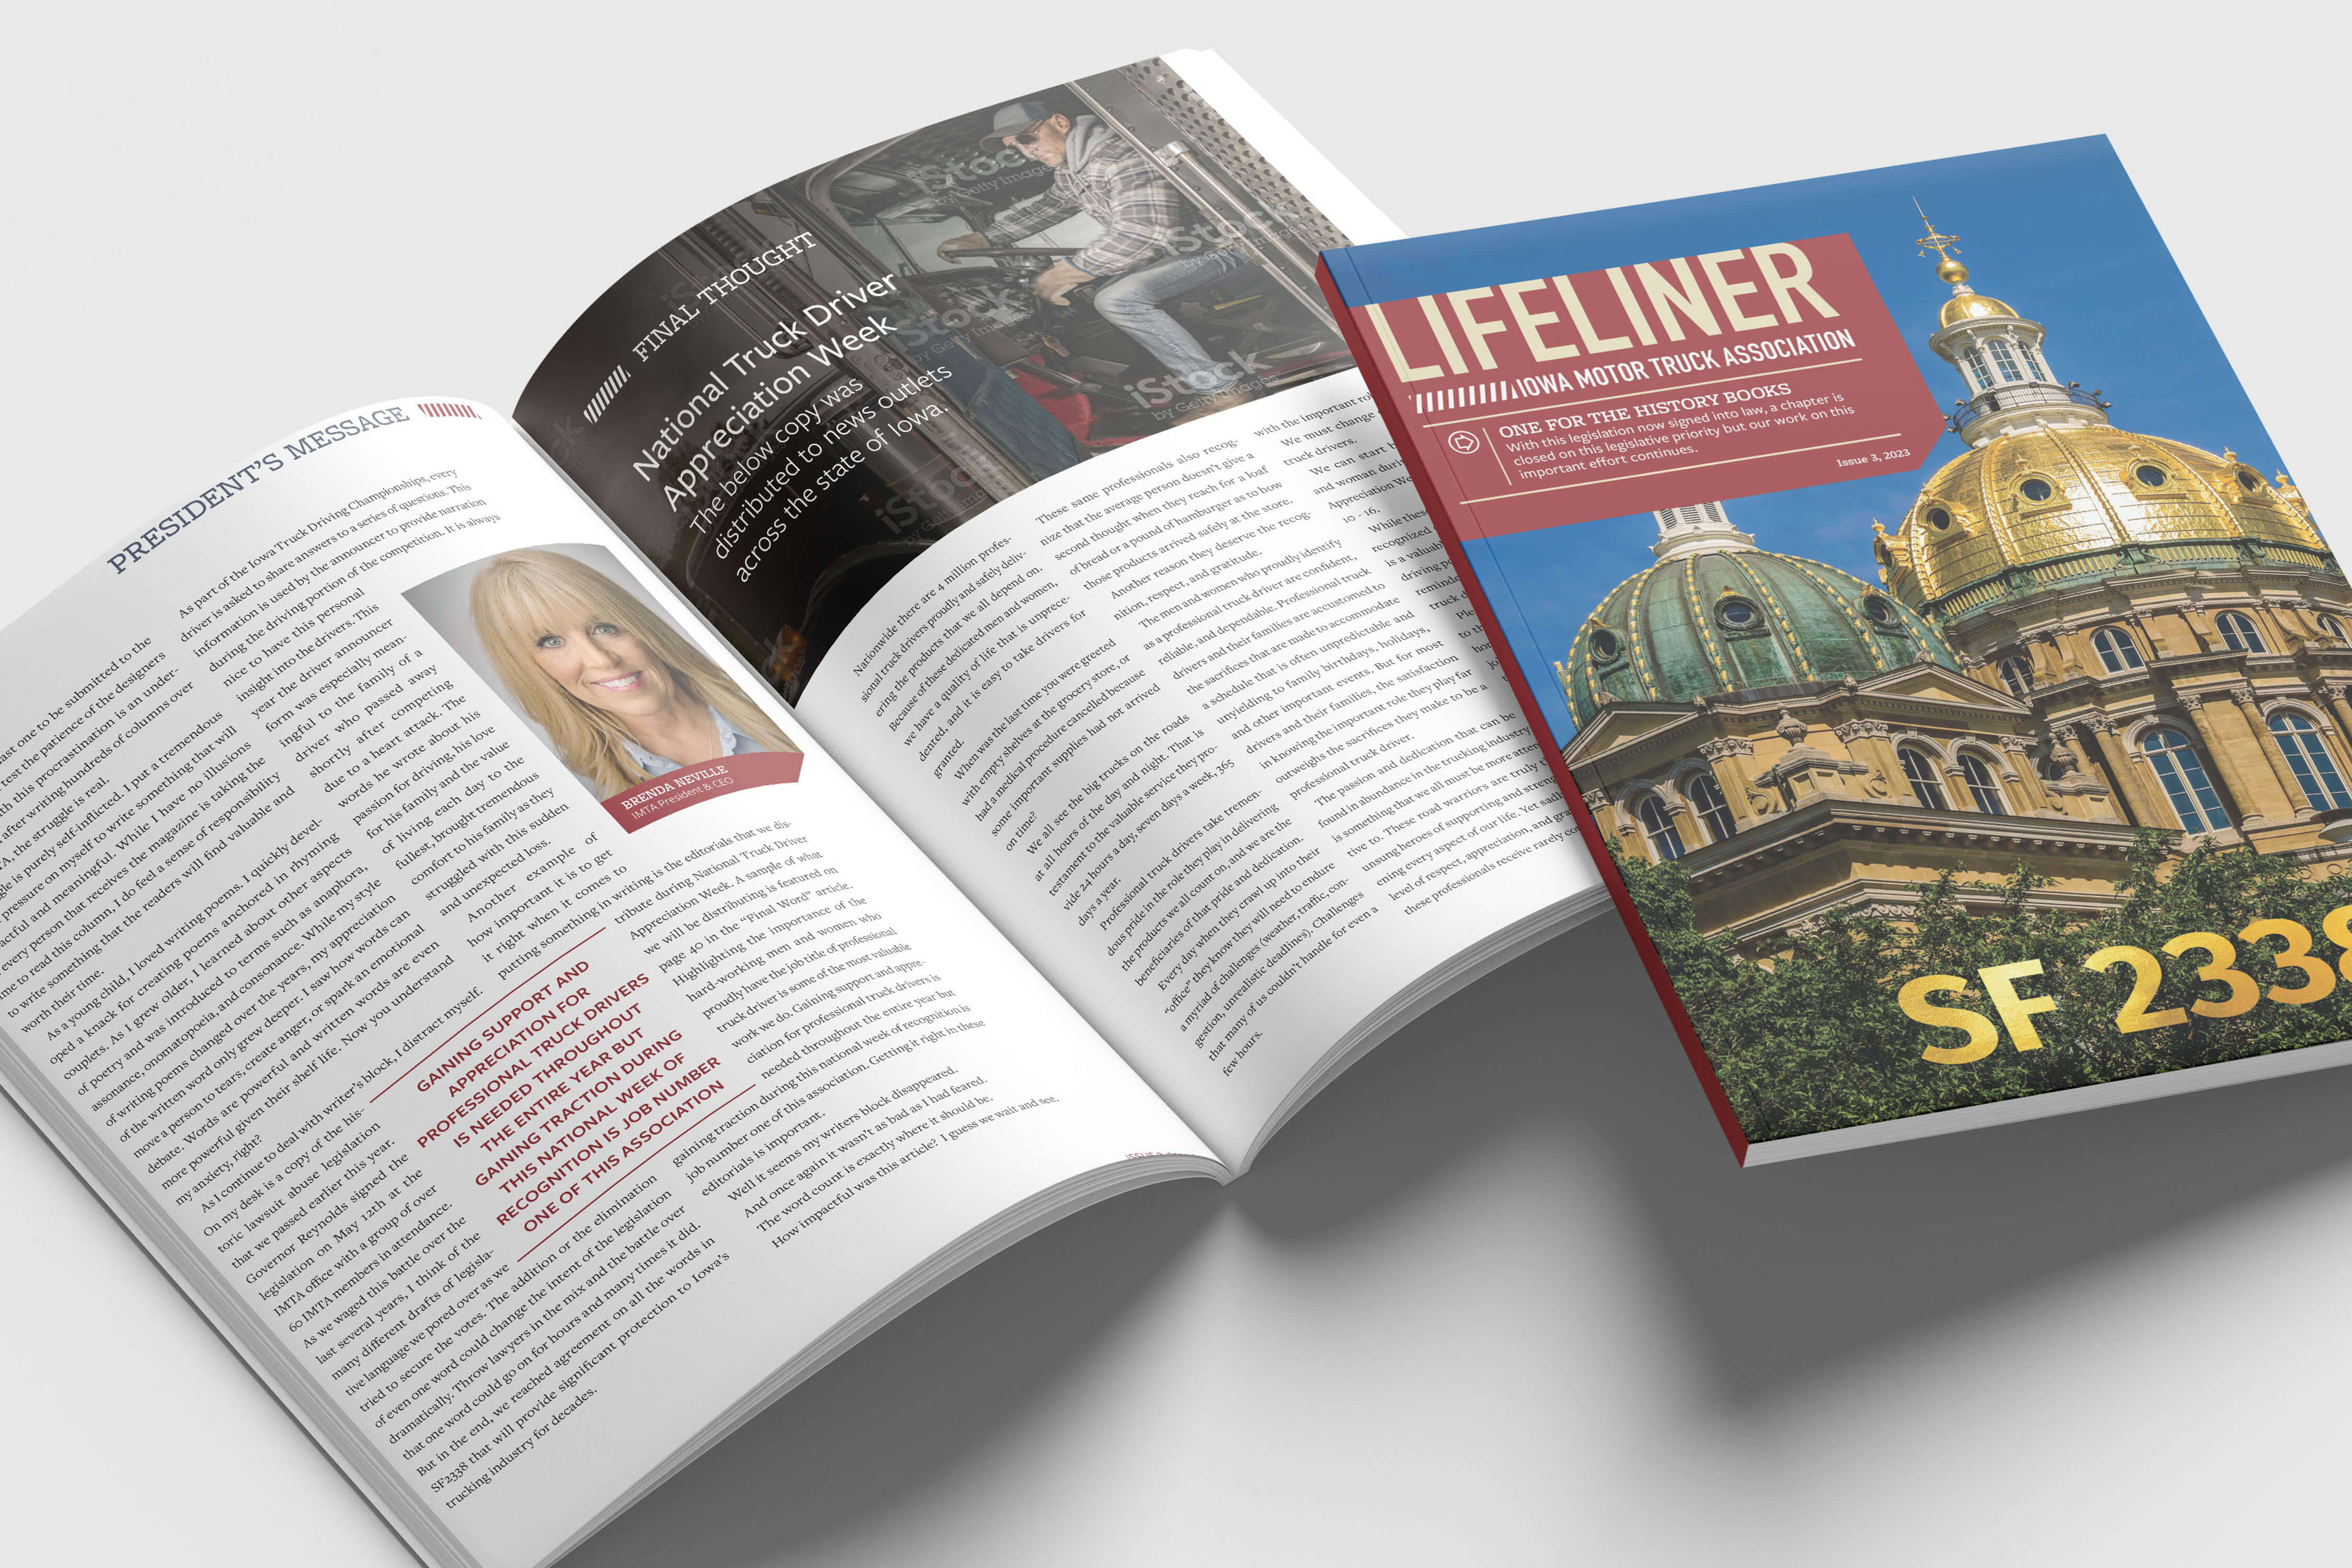 Lifeliner Magazine